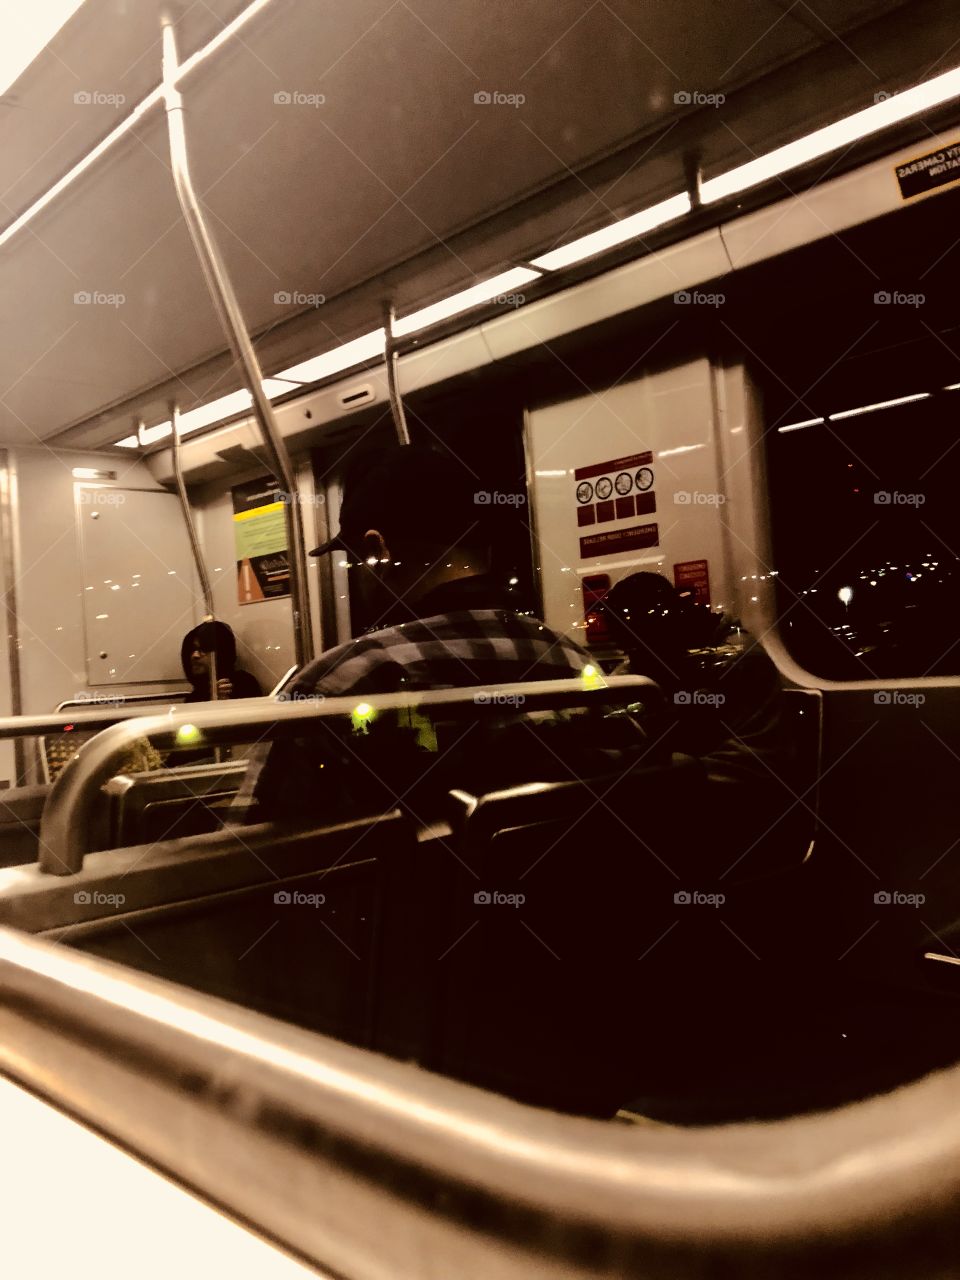 Train ride 🙏🏾